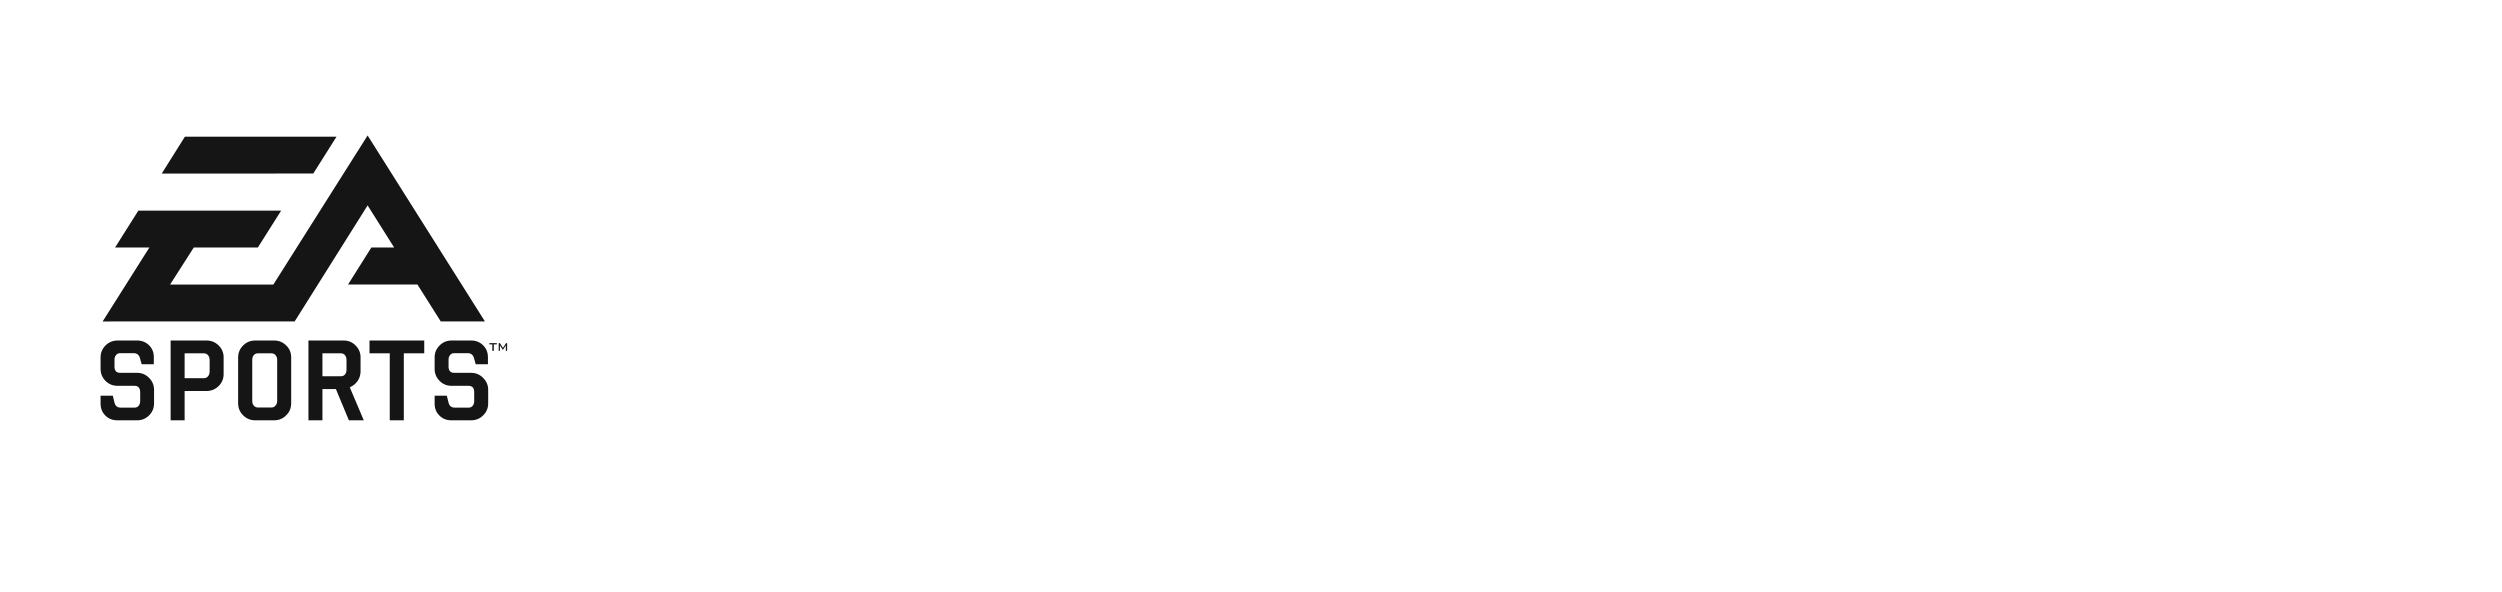 EA SPORTS FC 24 $33.999 EFVO/TRANS - DIGITAL PS4 SECUNDARIO